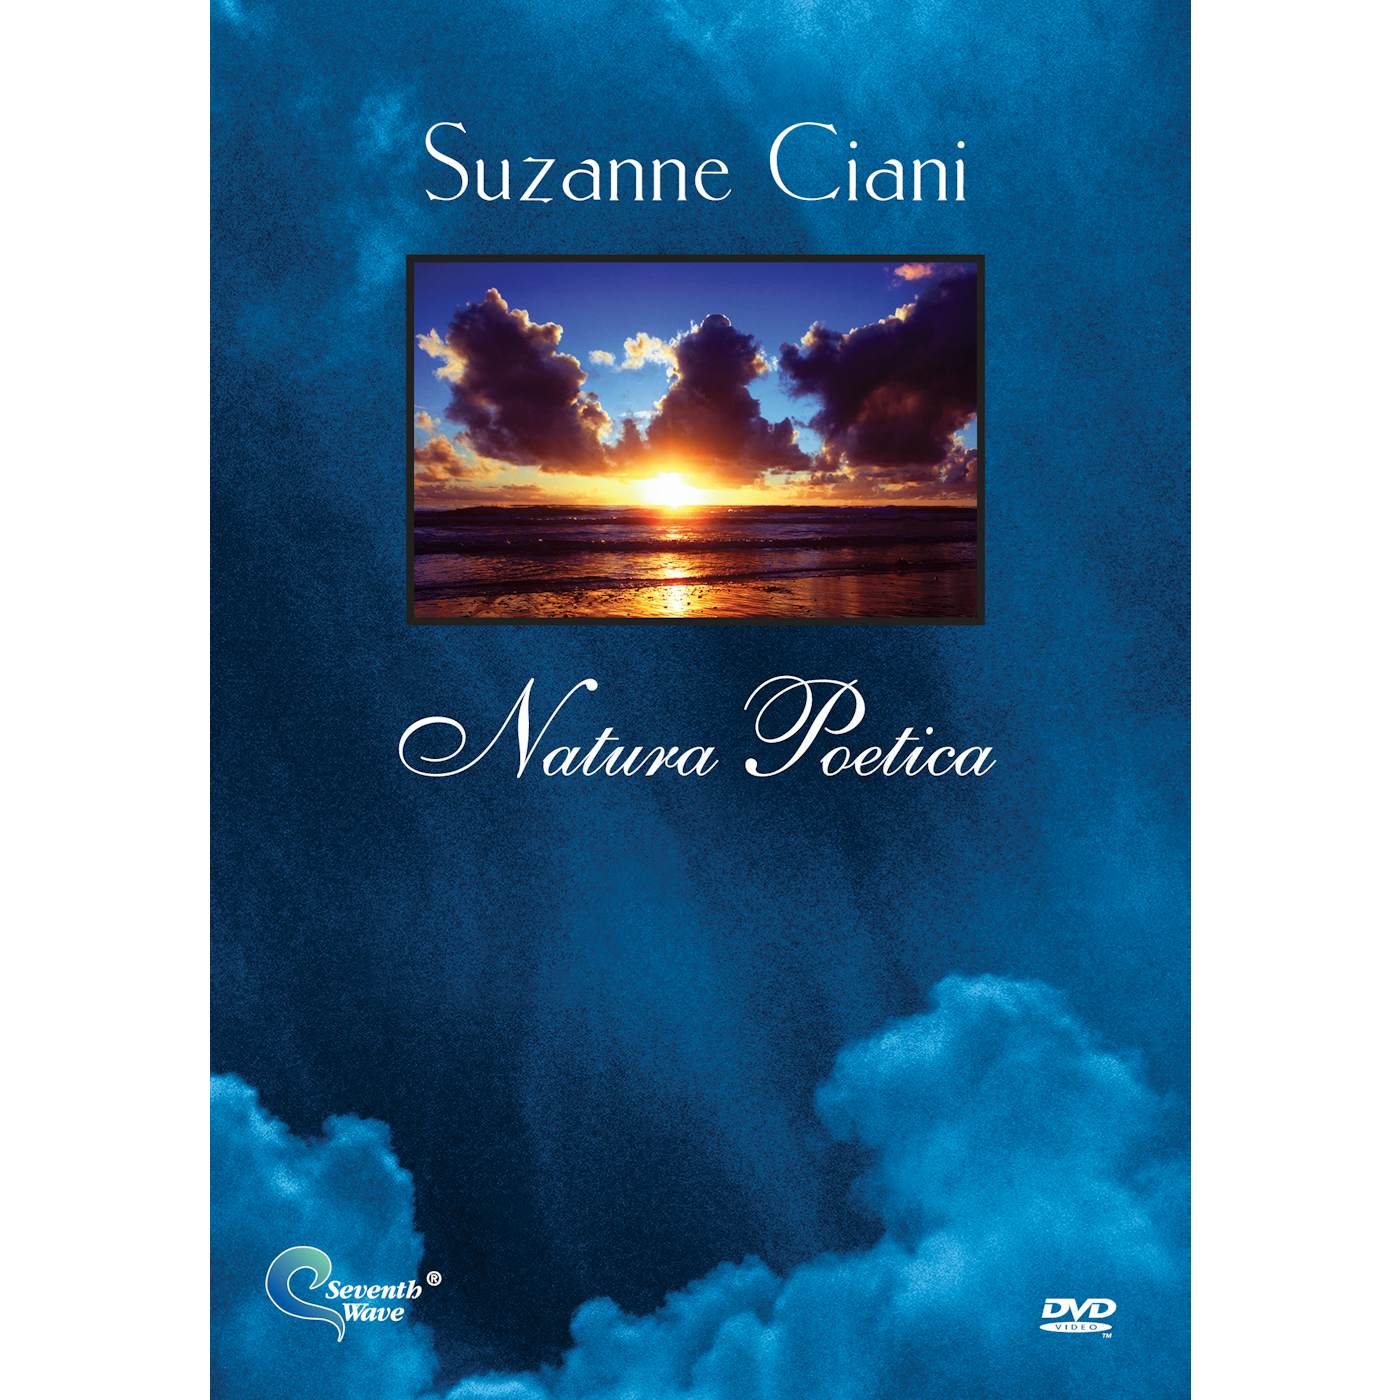 Suzanne Ciani NATURA POETICA DVD